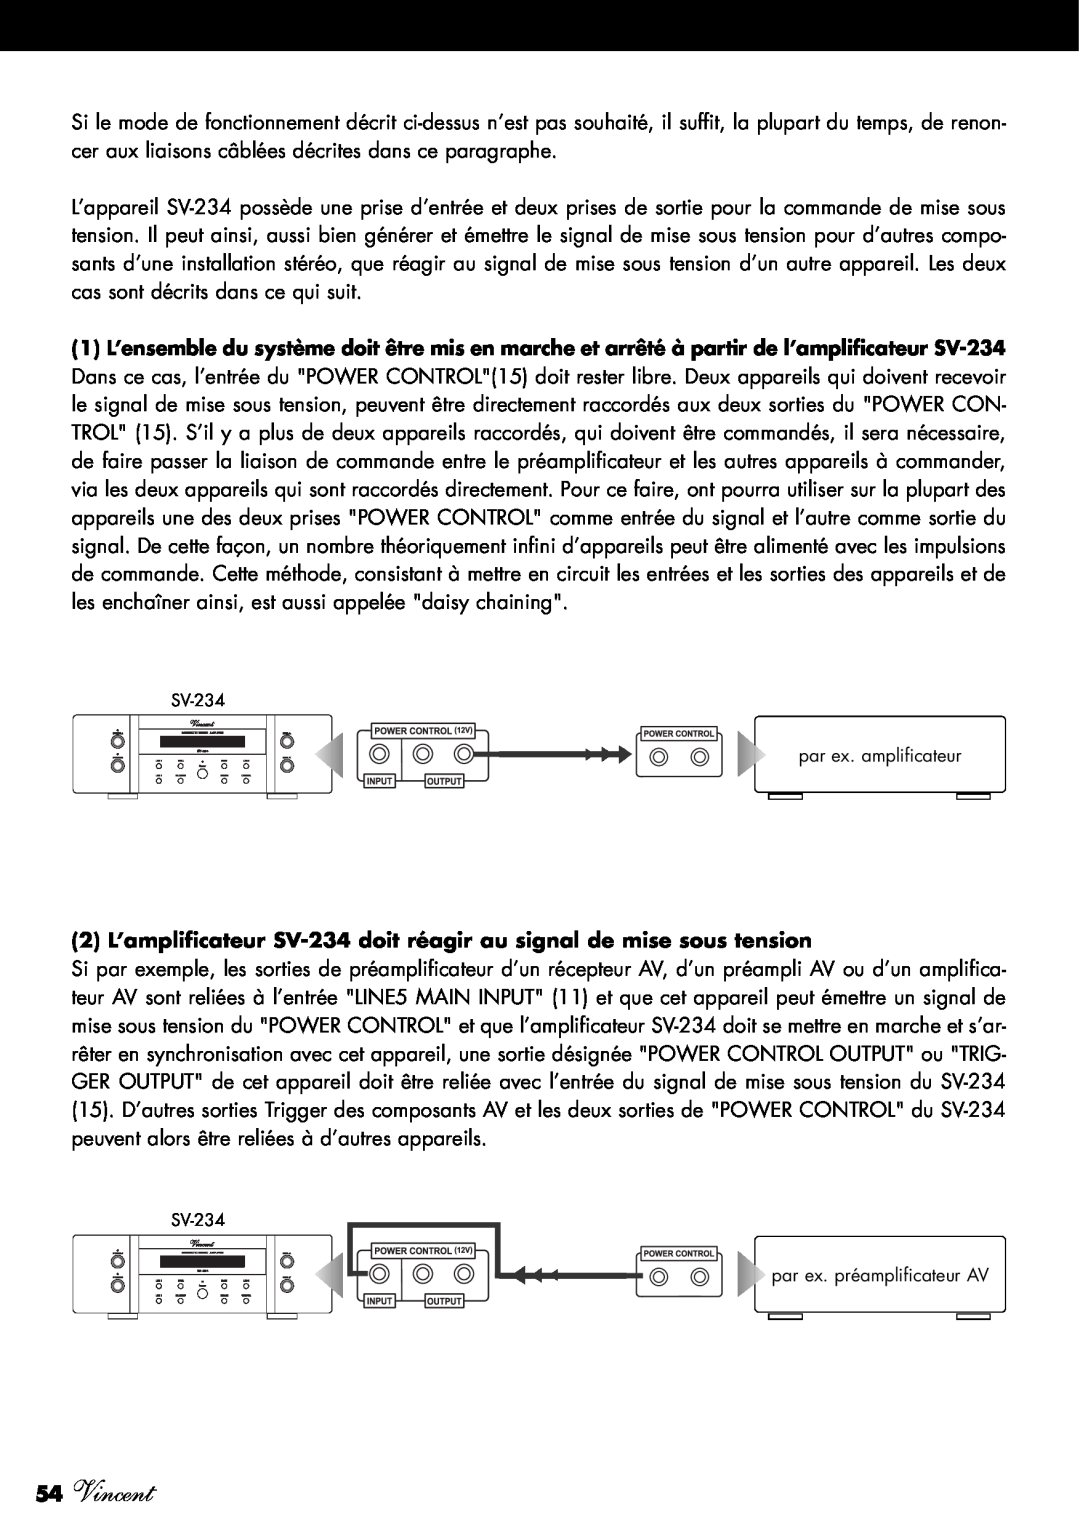 Vincent Audio manuel dutilisation 54Vincent, SV-234 par ex. amplificateur, SV-234 par ex. préamplificateur AV 